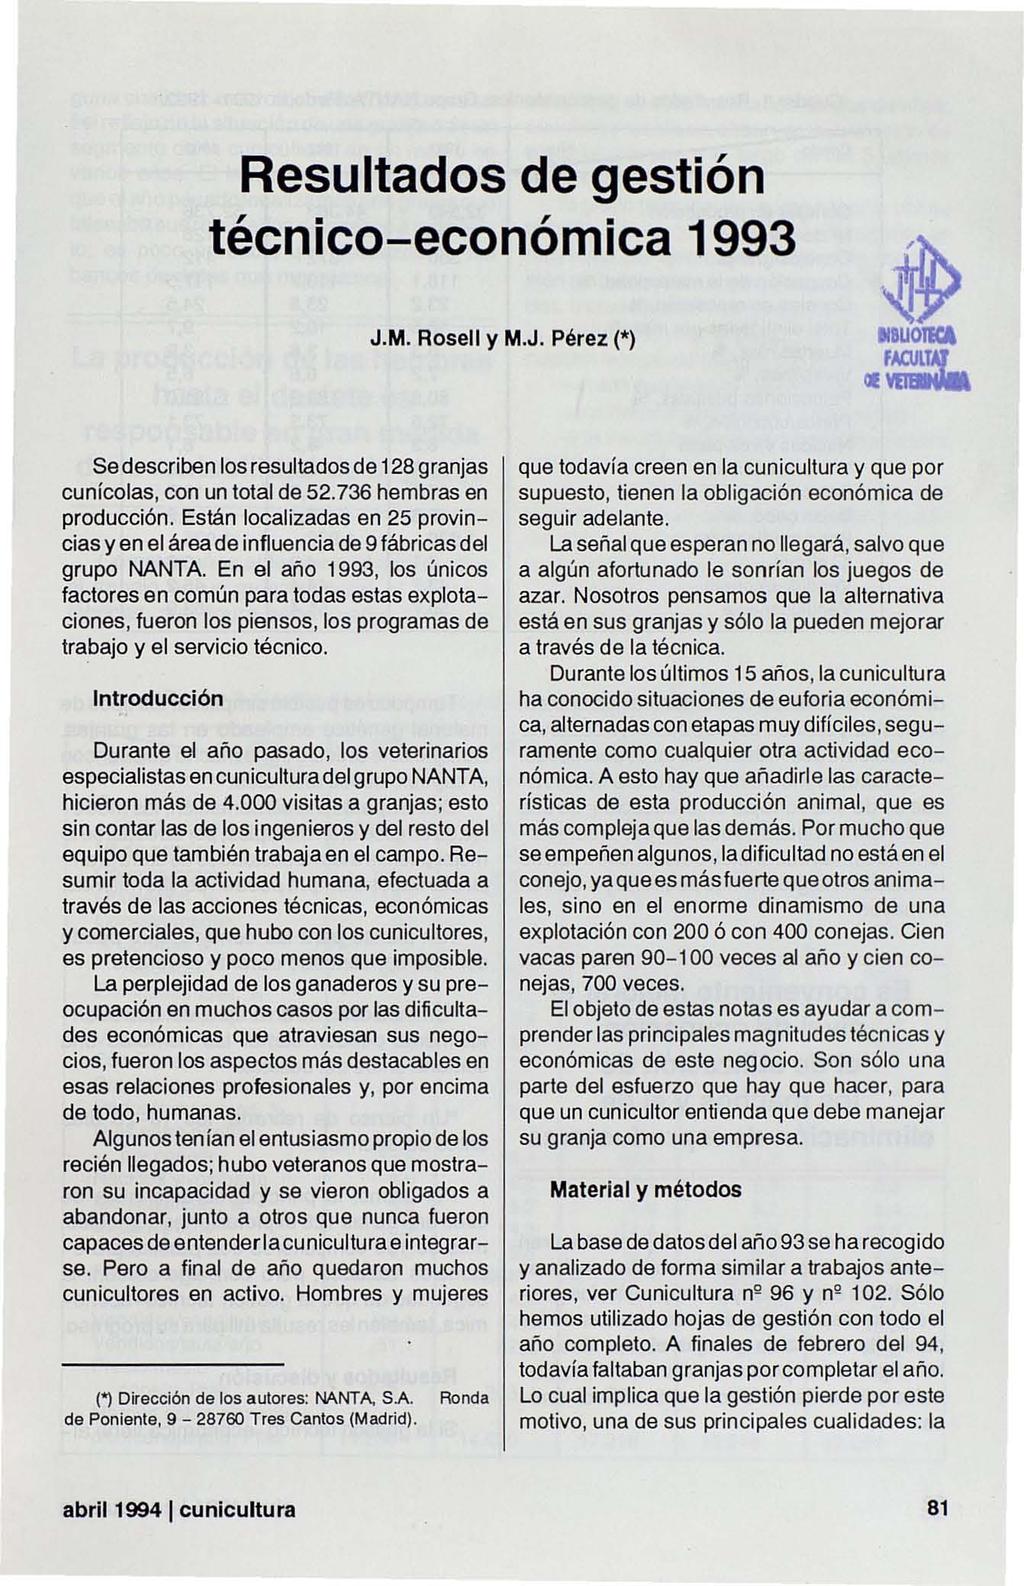 Resultados de gestión técnico-económica 1993 J.M. Rosell y M.J. Pérez (*) ~ IIBUOIKA II~ Se describen los resultados de 128 granjas cunícolas, con un total de 52.736 hembras en producción.